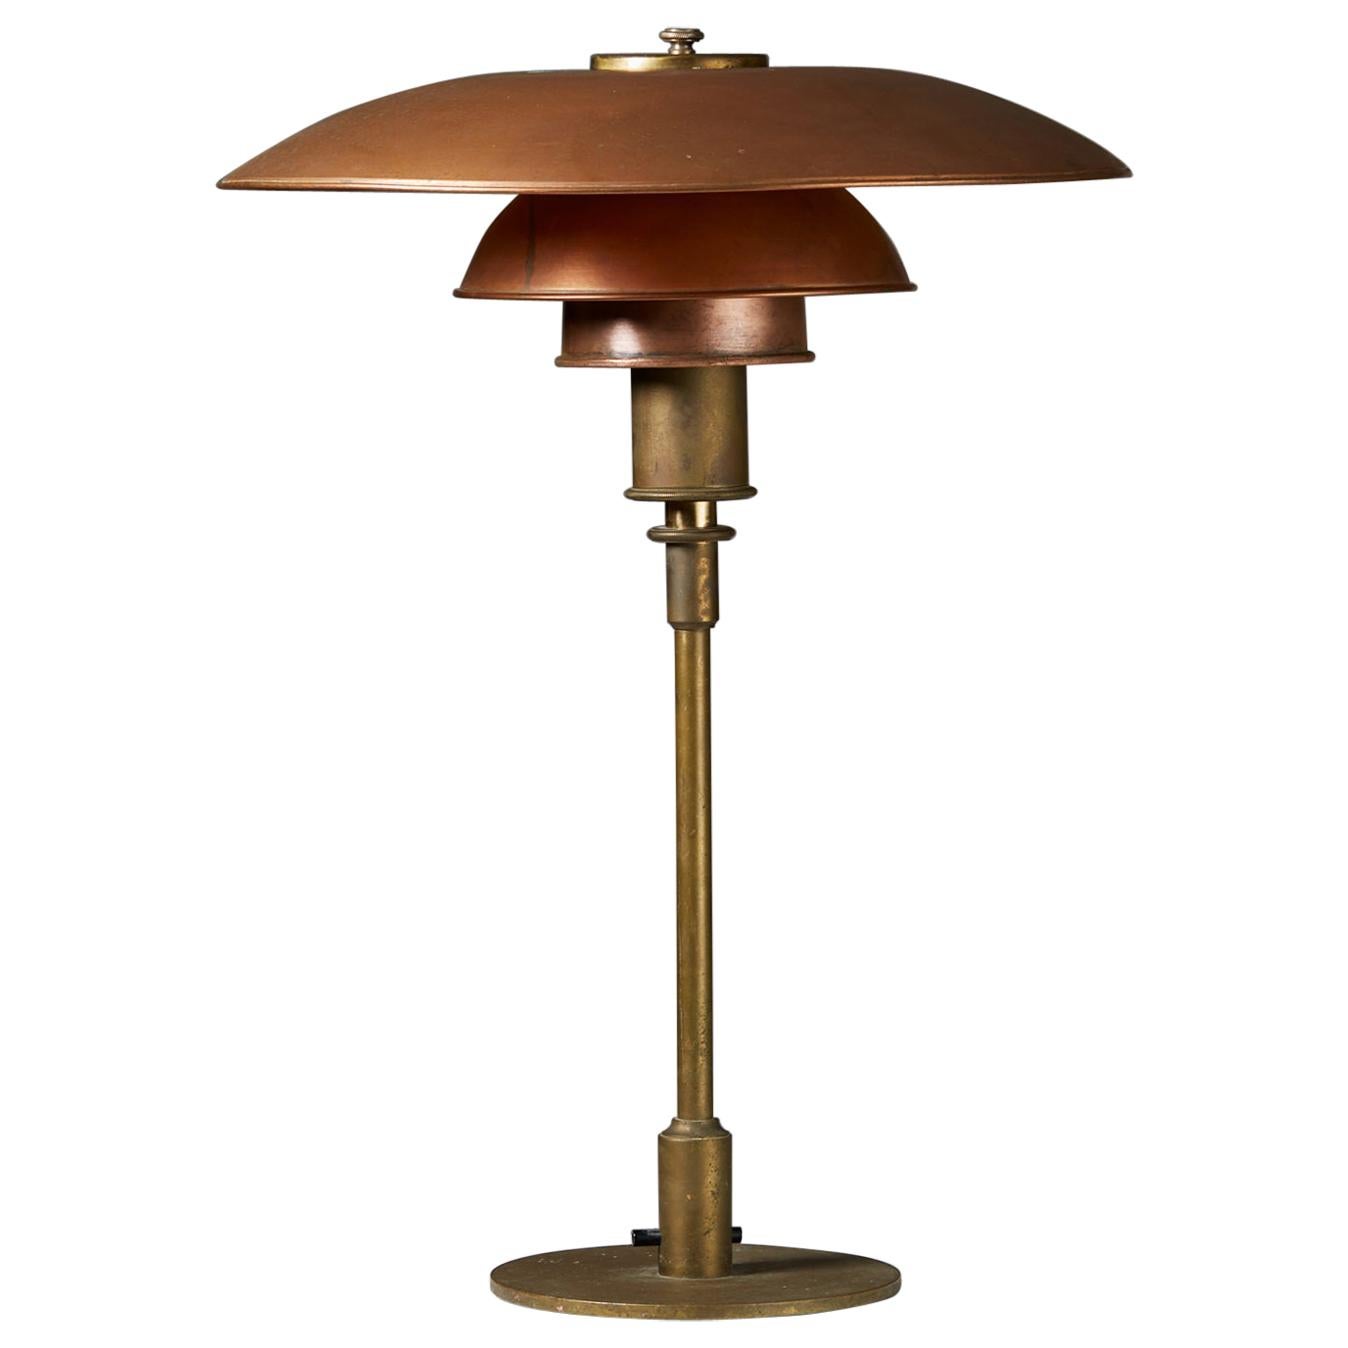 Table Lamp PH 4/3 Designed by Poul Henningsen for Louis Poulsen, Denmark, 1929